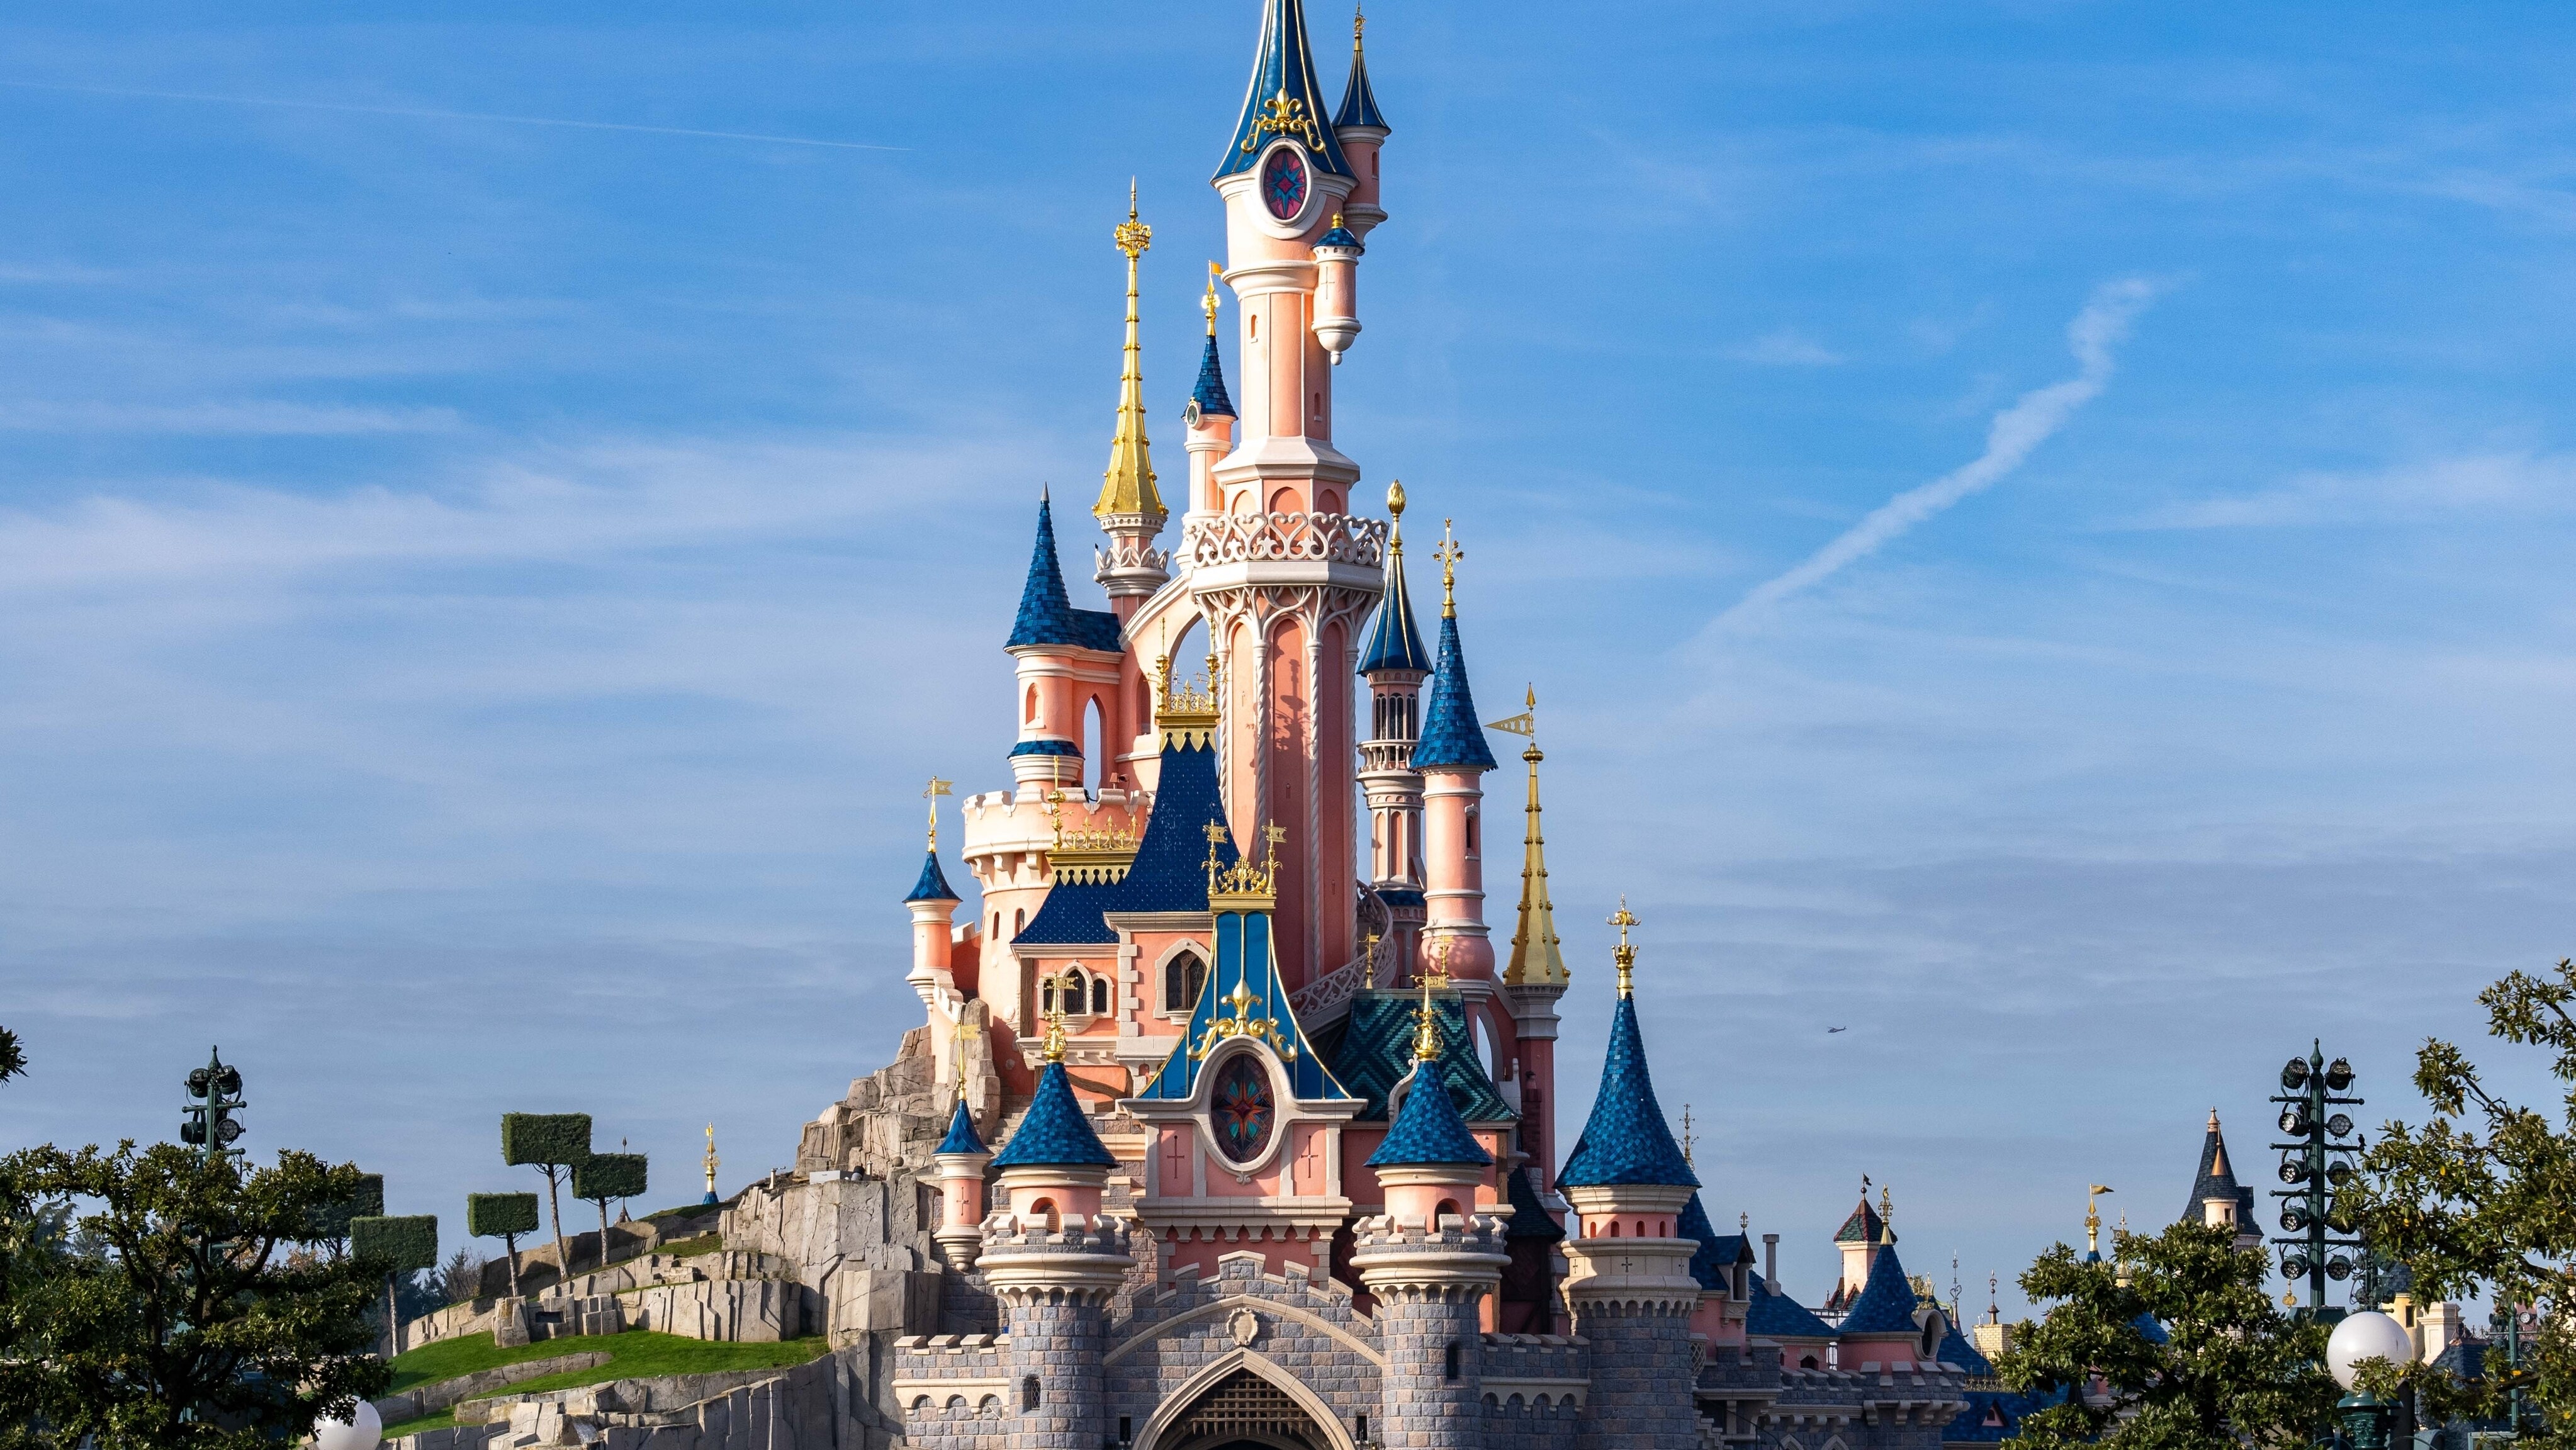 El Castillo de la Bella Durmiente vuelve a brillar en Disneyland Paris tras 12 meses de remodelación